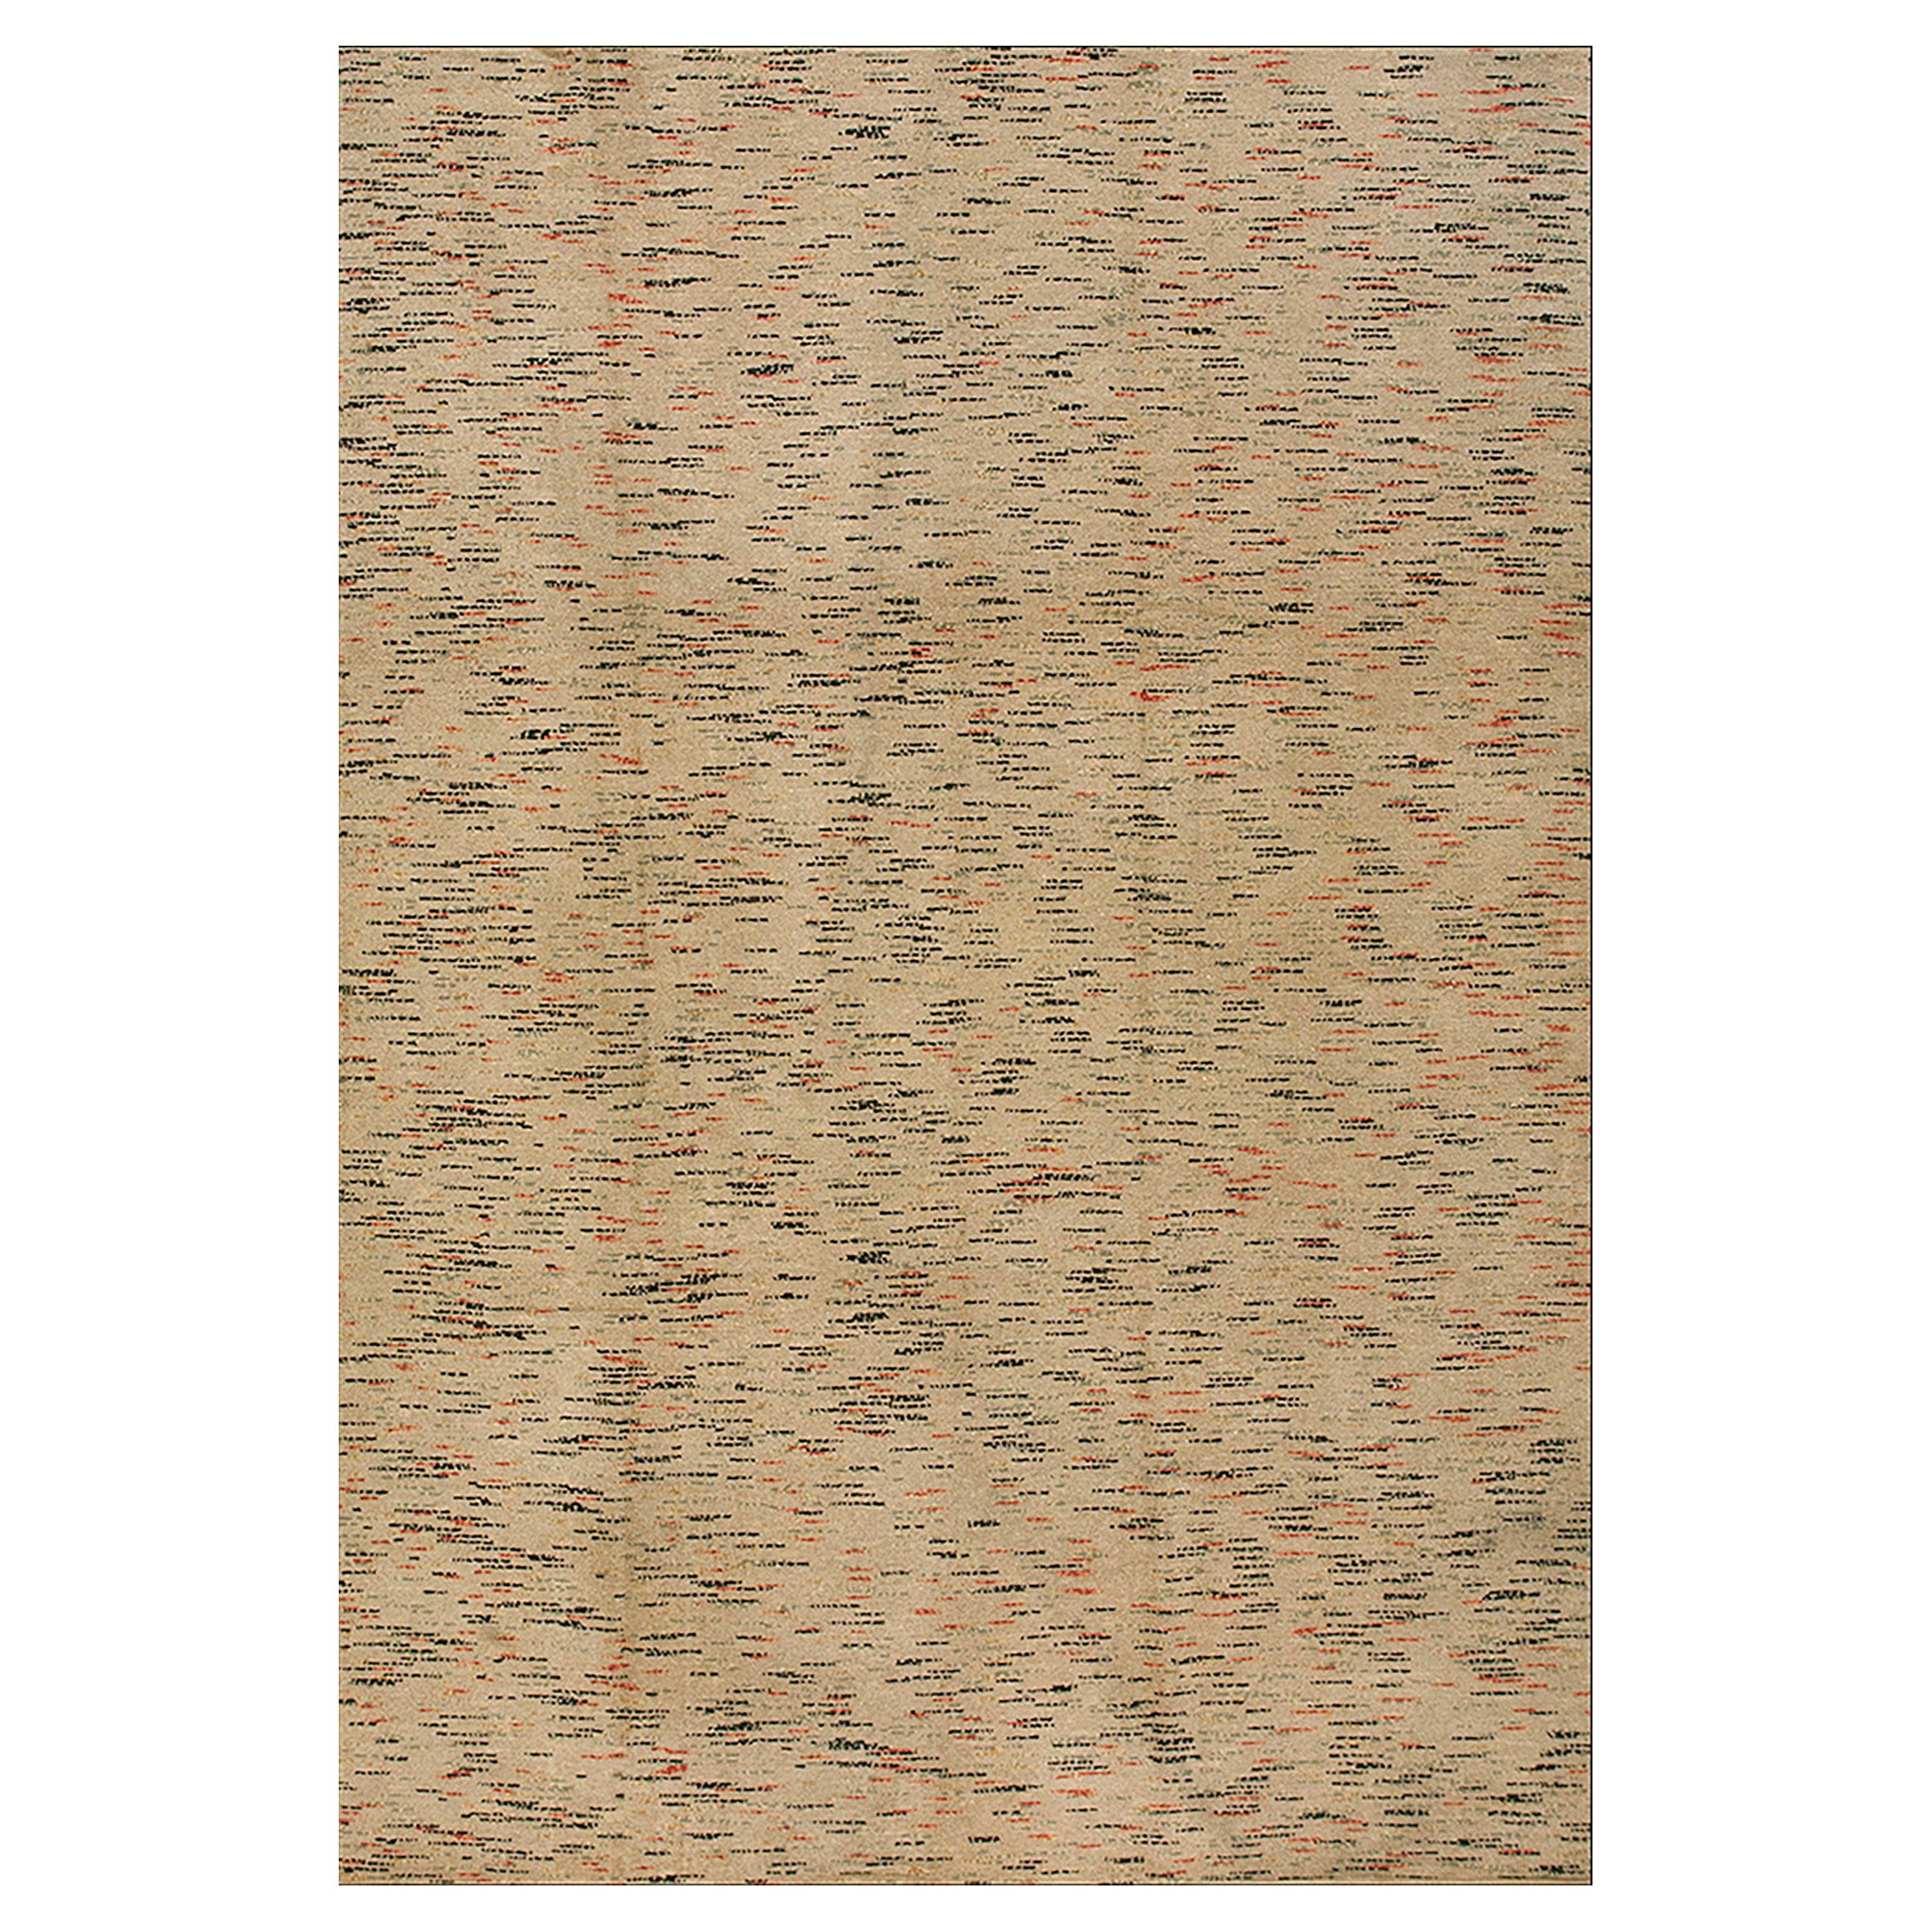 Antiker amerikanischer Rag-Teppich, 1,83 m x 3,66 m, antik